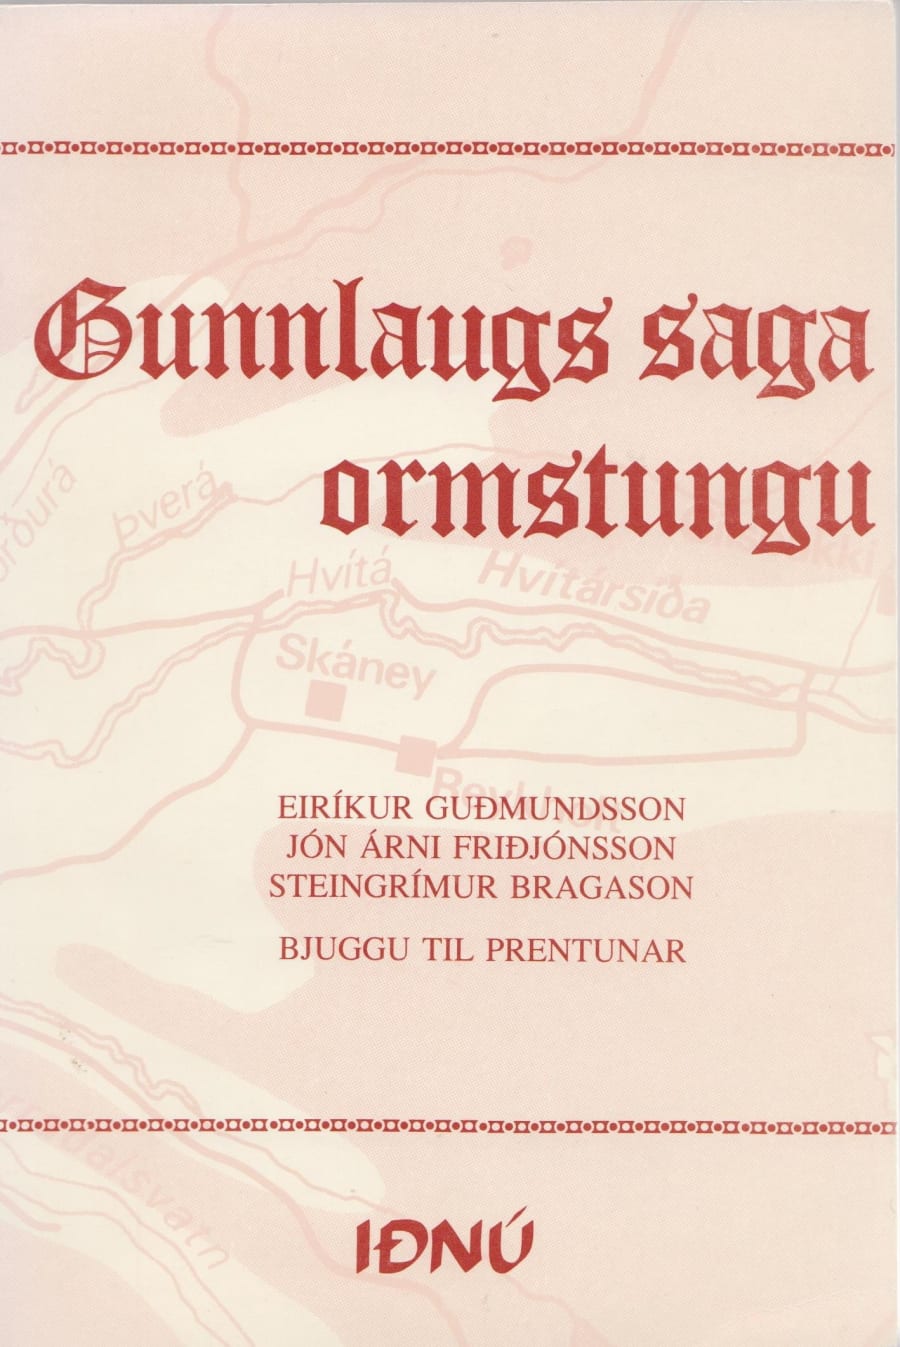 Gunnlaugs saga Ormstungu